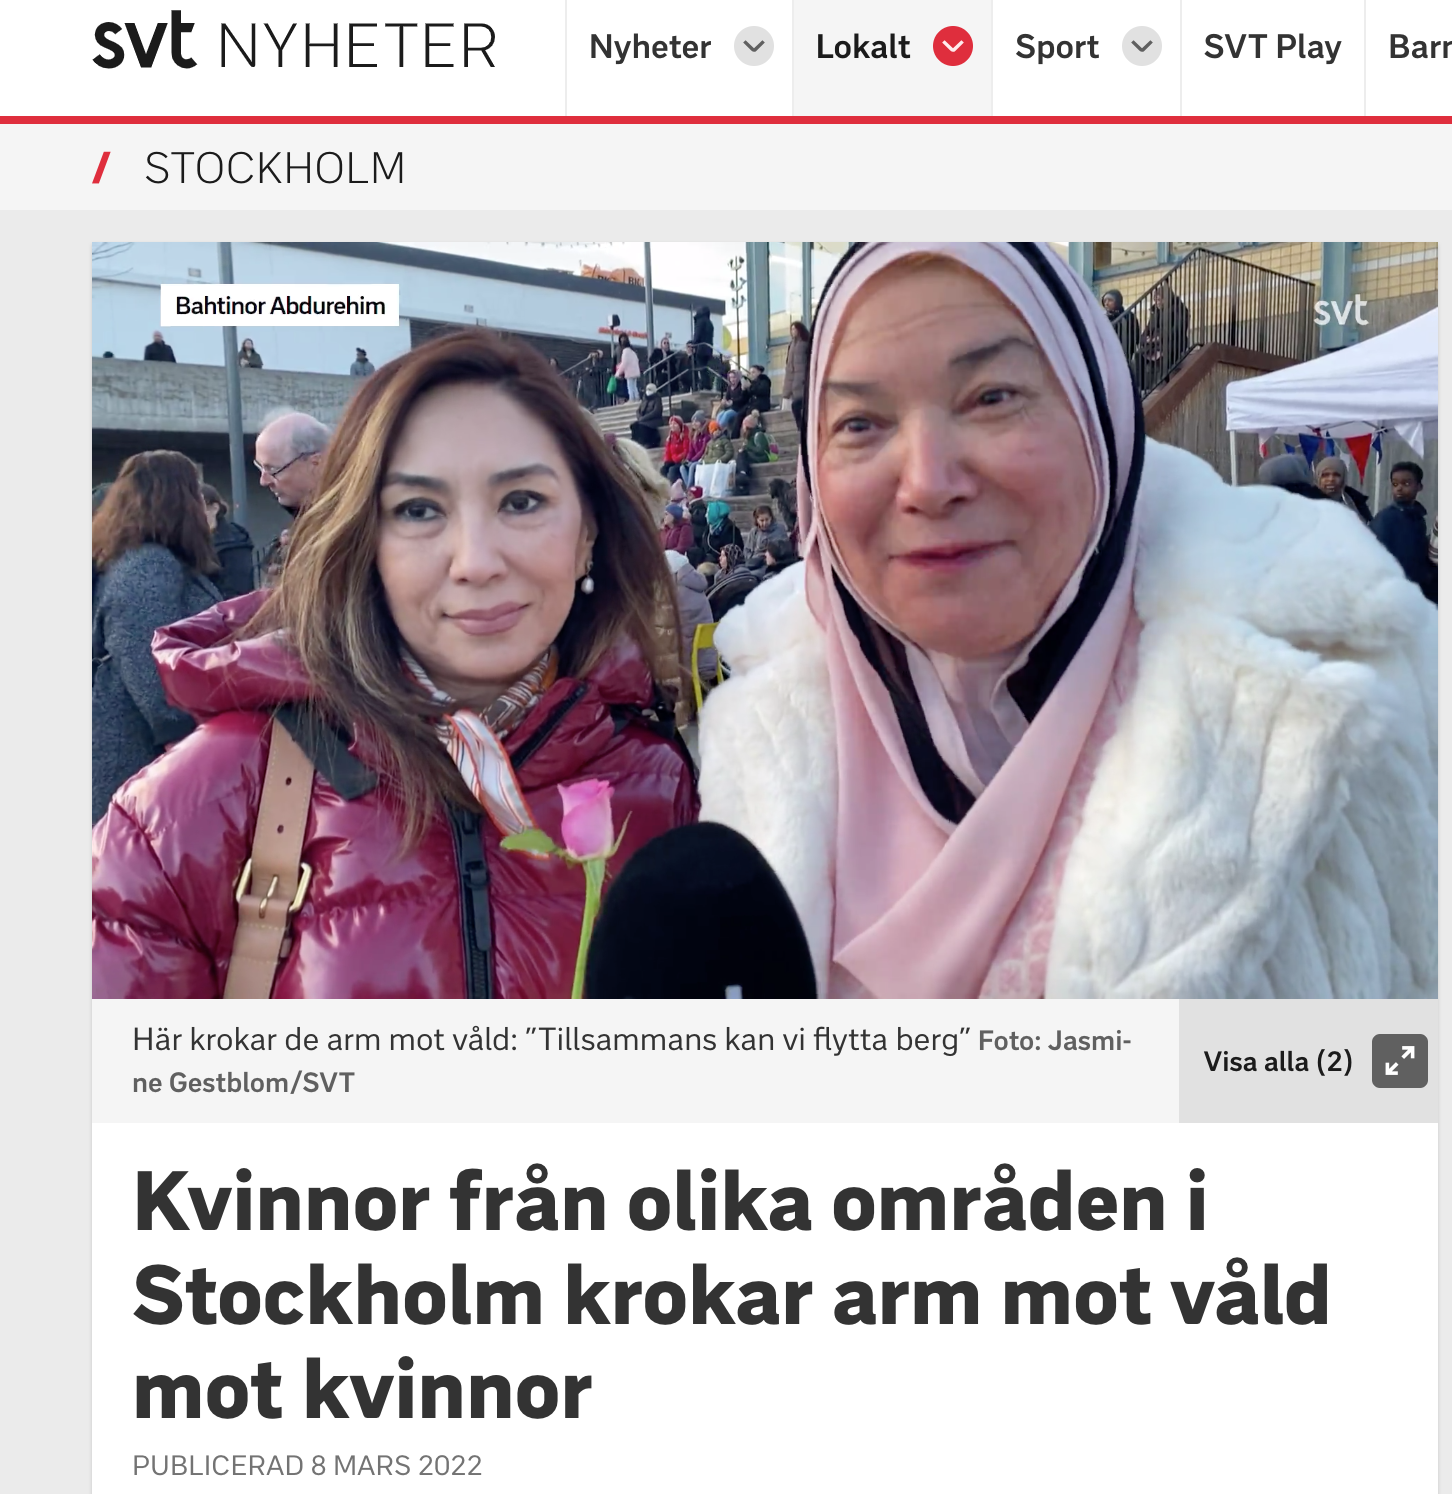 SVT intervjuar kvinnor som krokar arm i Tensta